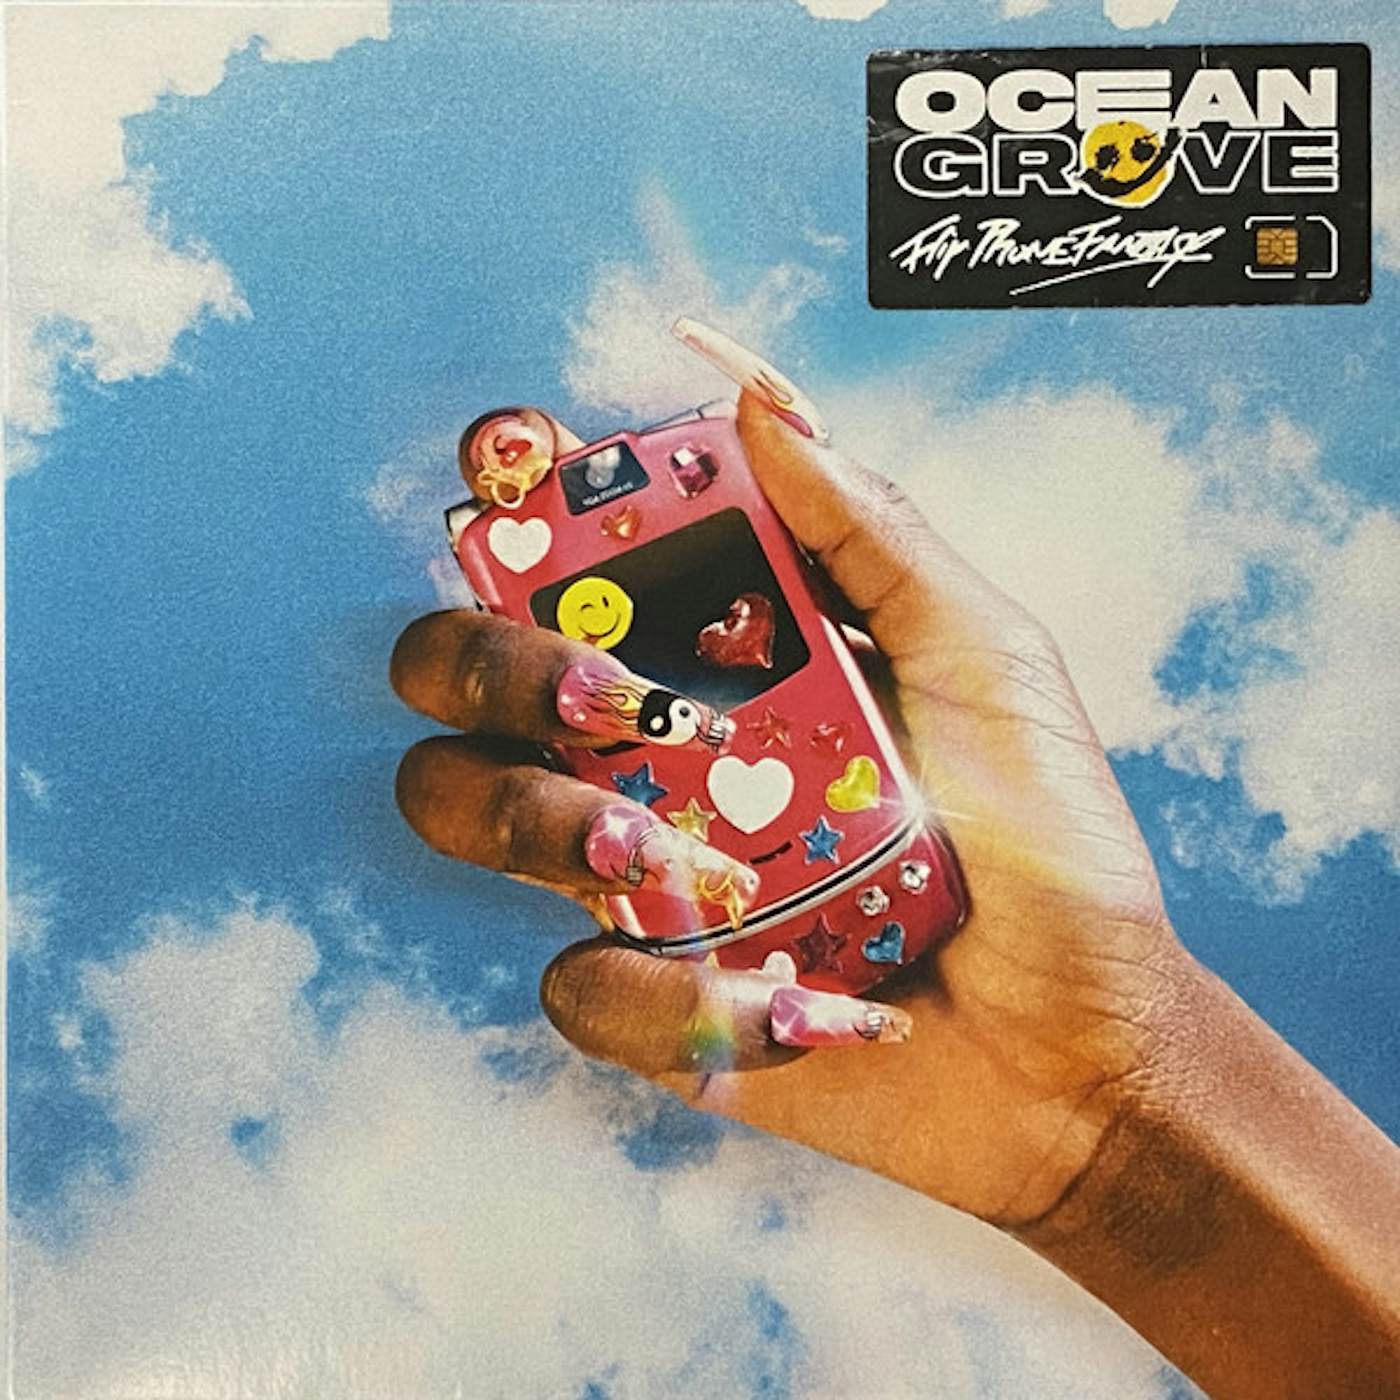 Ocean Grove FLIP PHONE FANTASY CD